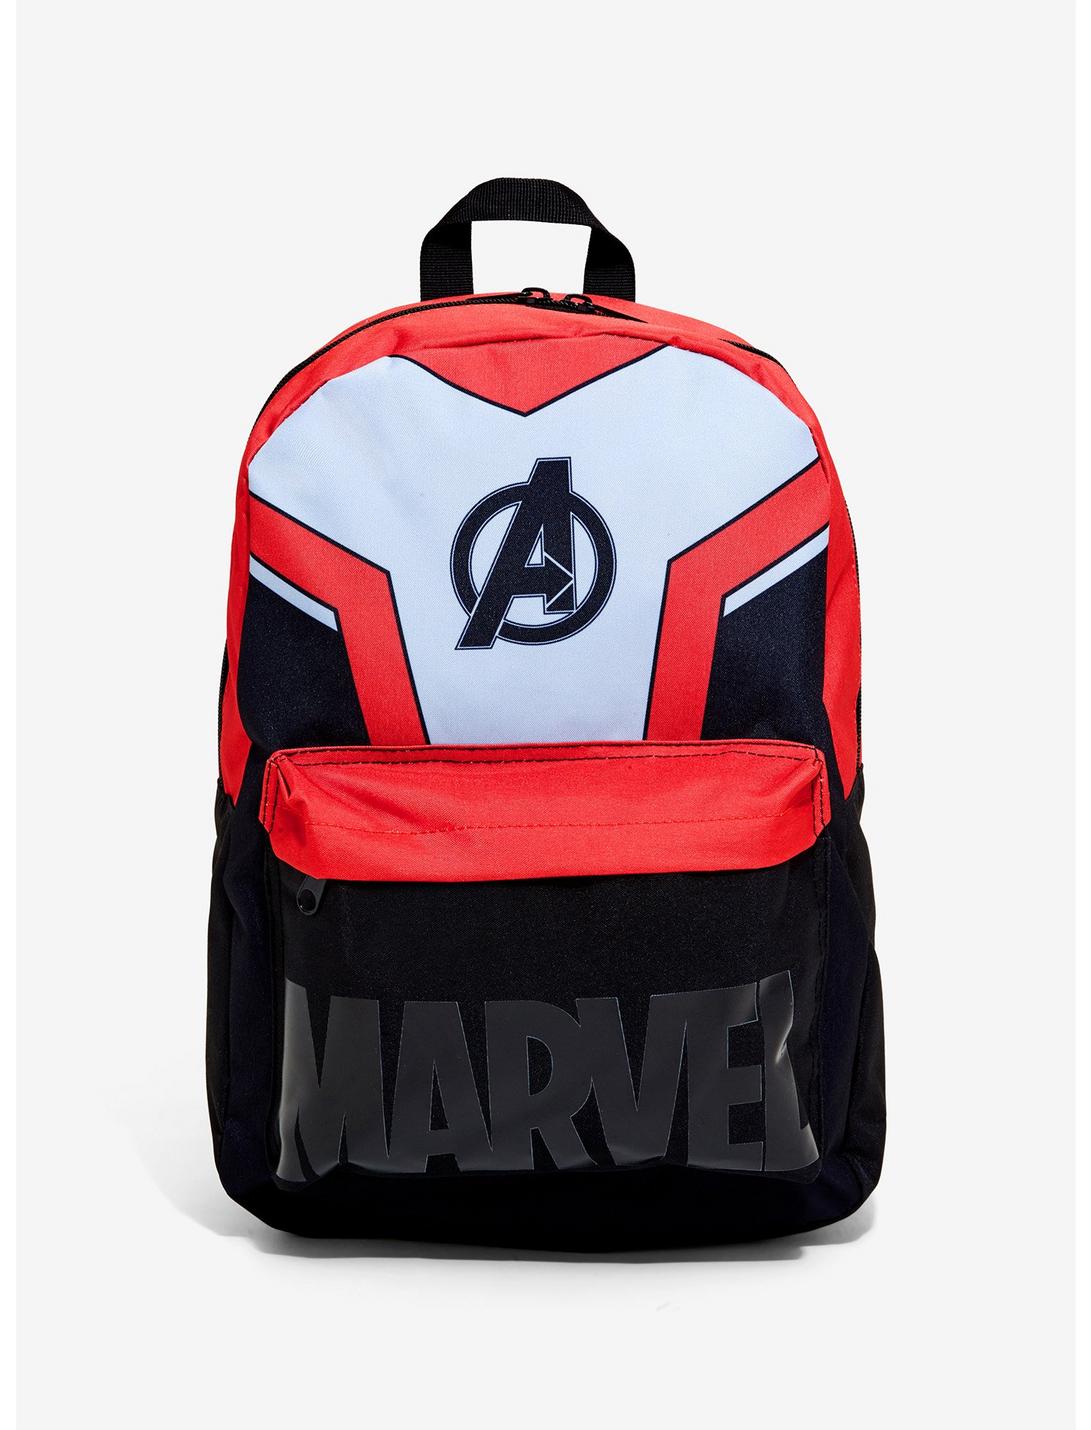 Marvel Avengers Backpack, , hi-res